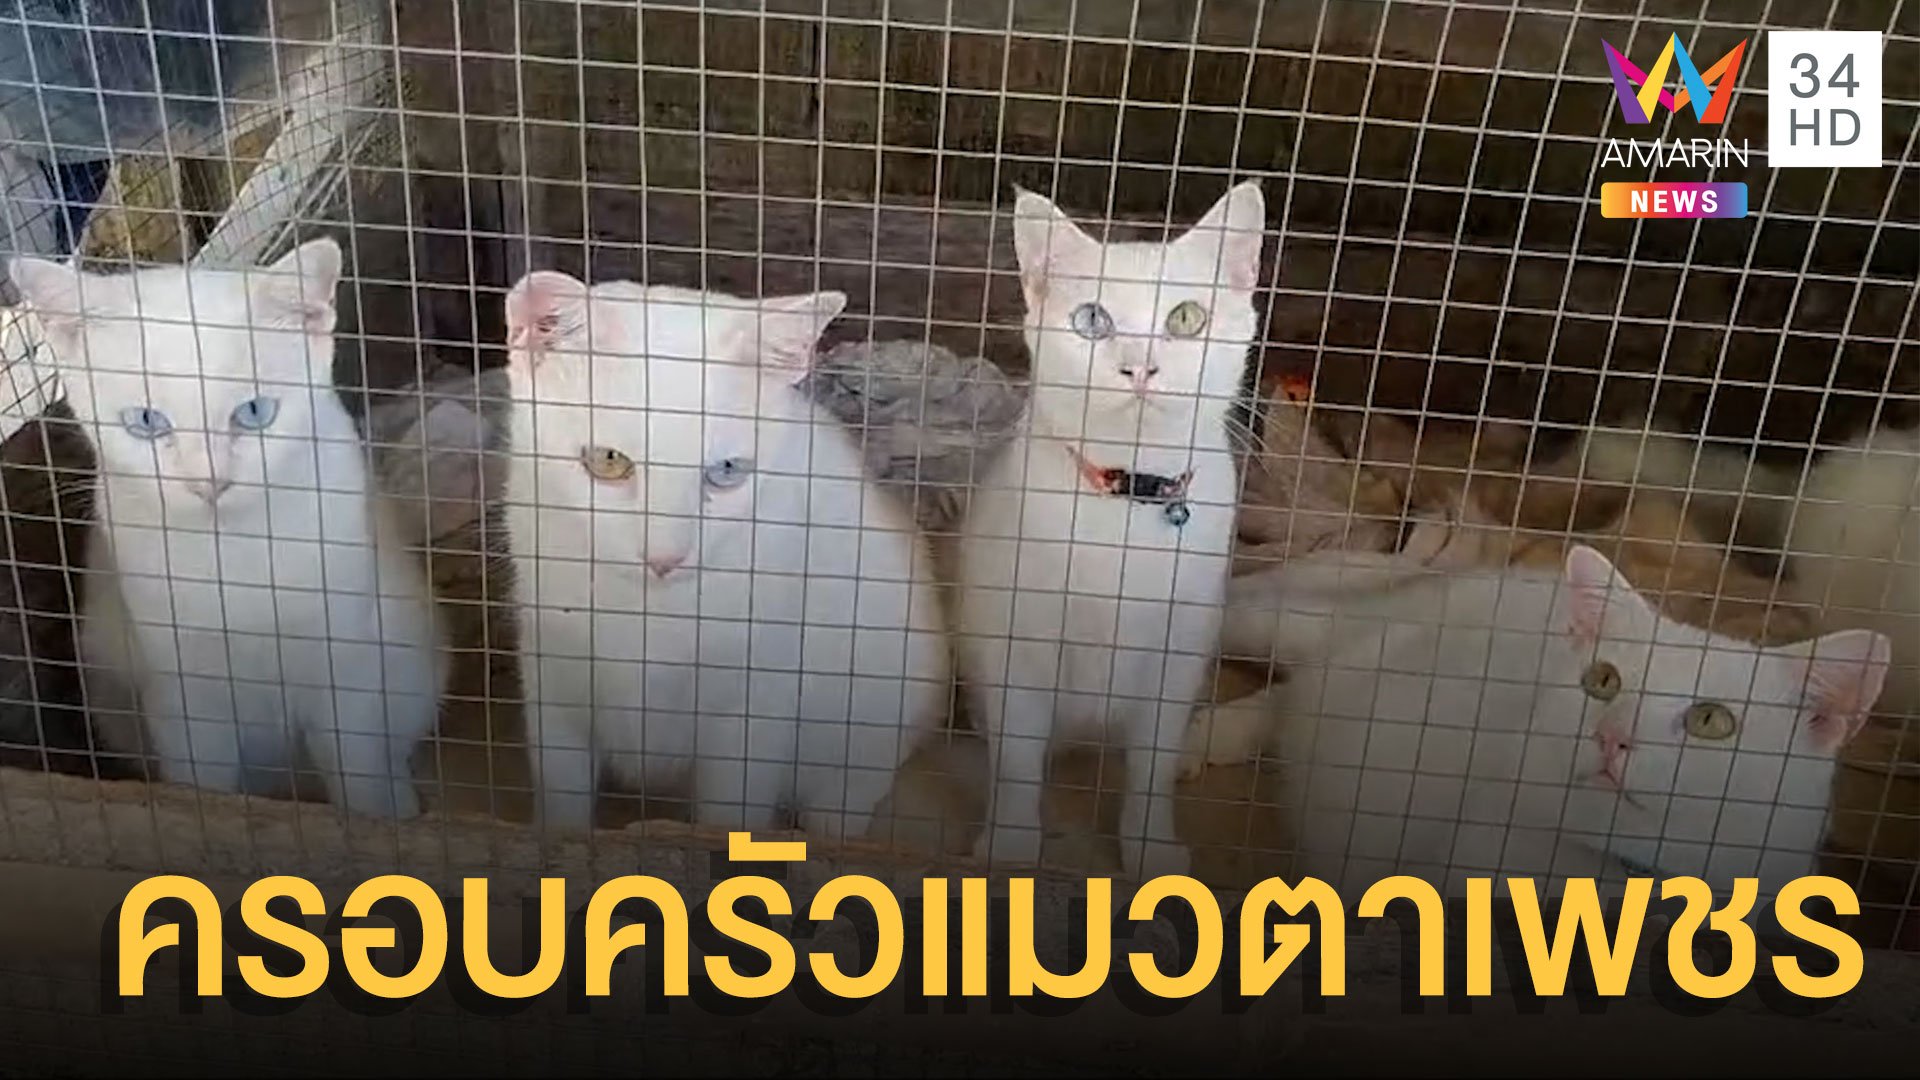 ชาวบ้านฮือฮา! ครอบครัวแมวตาเพชร 9 ตัว | ข่าวอรุณอมรินทร์ | 26 ก.ค. 65 | AMARIN TVHD34